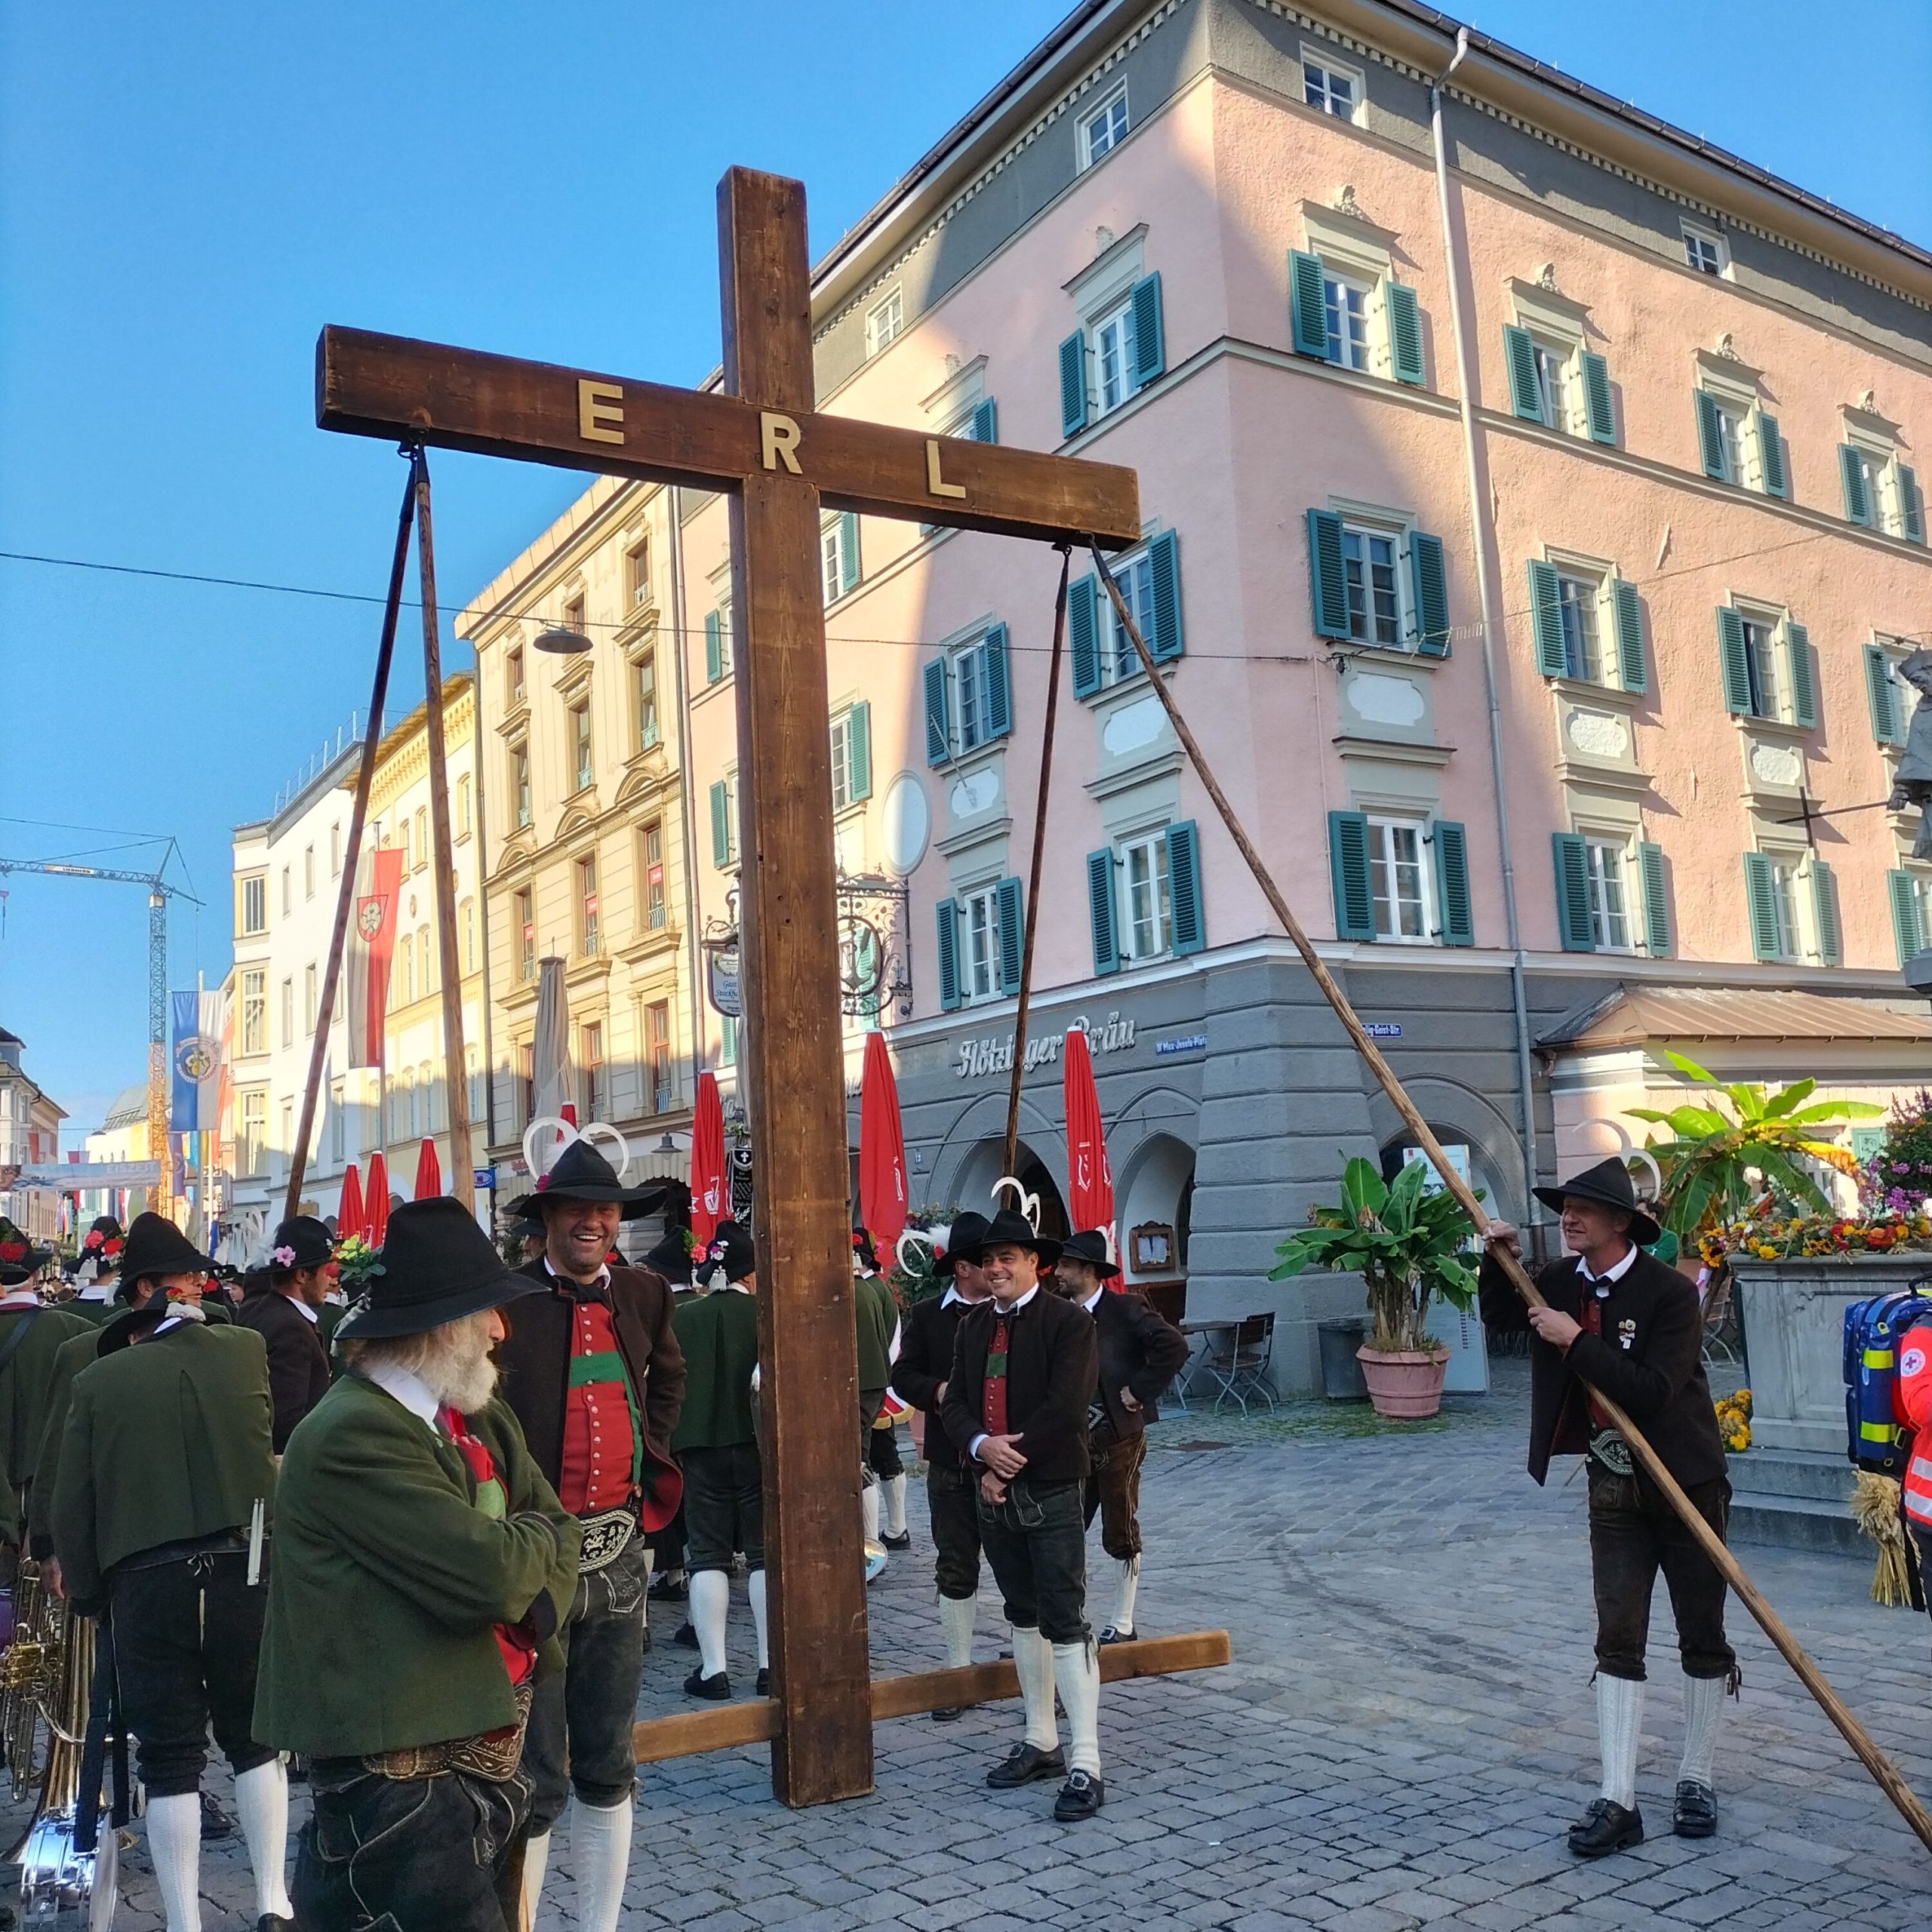 Erntedankfest Rsoenheim. Erler Kreuz auf dem Max-Josefs-Platz